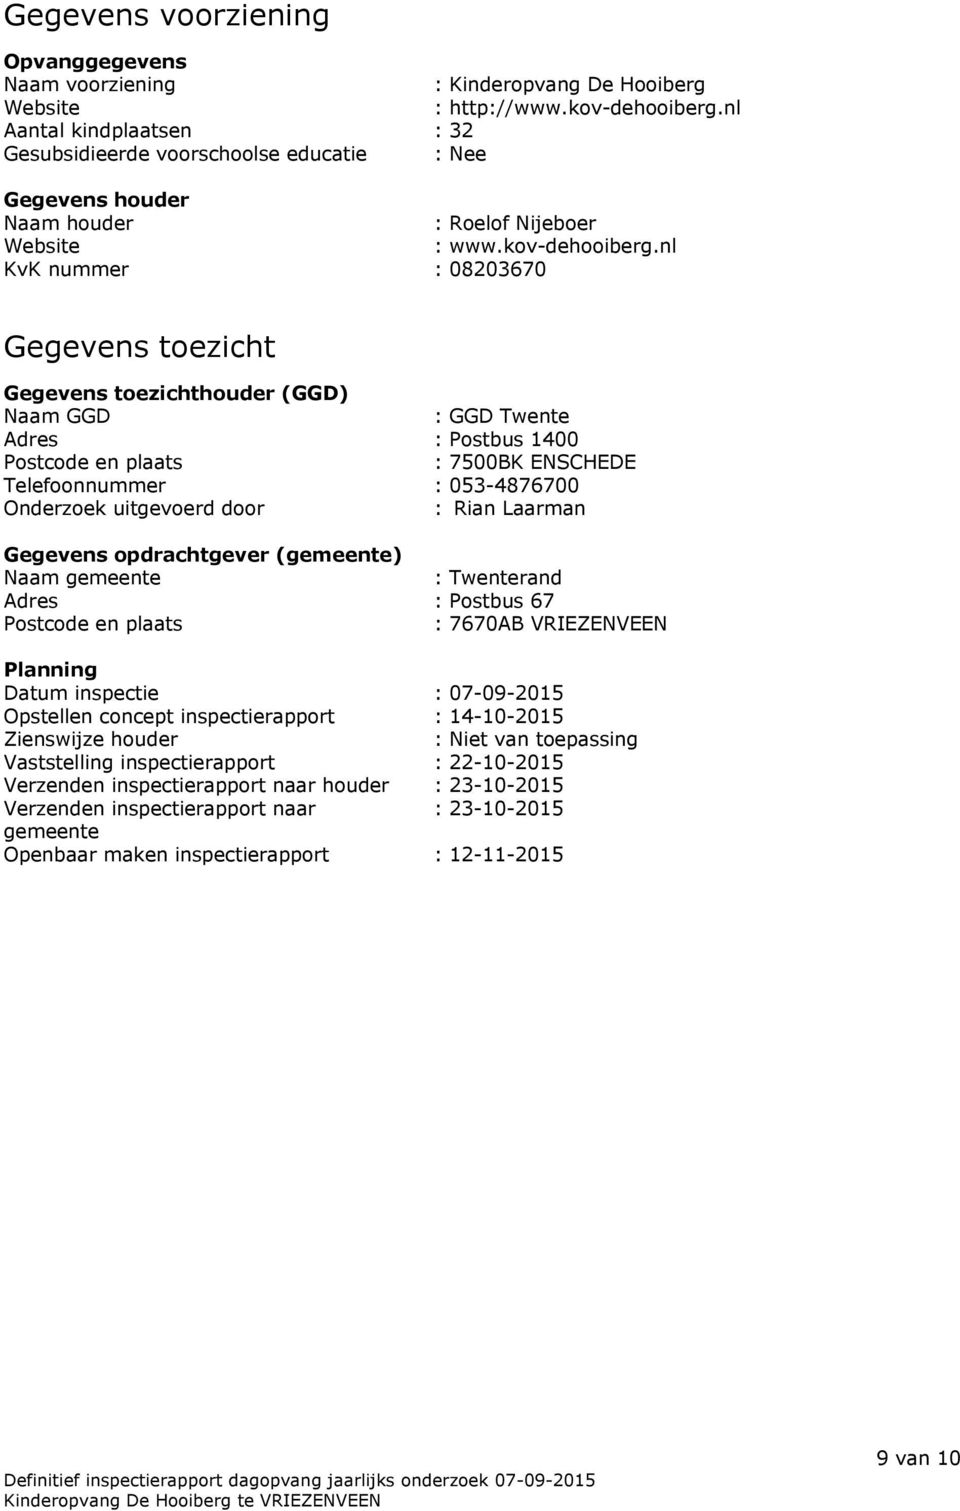 nl KvK nummer : 08203670 Gegevens toezicht Gegevens toezichthouder (GGD) Naam GGD : GGD Twente Adres : Postbus 1400 Postcode en plaats : 7500BK ENSCHEDE Telefoonnummer : 053-4876700 Onderzoek